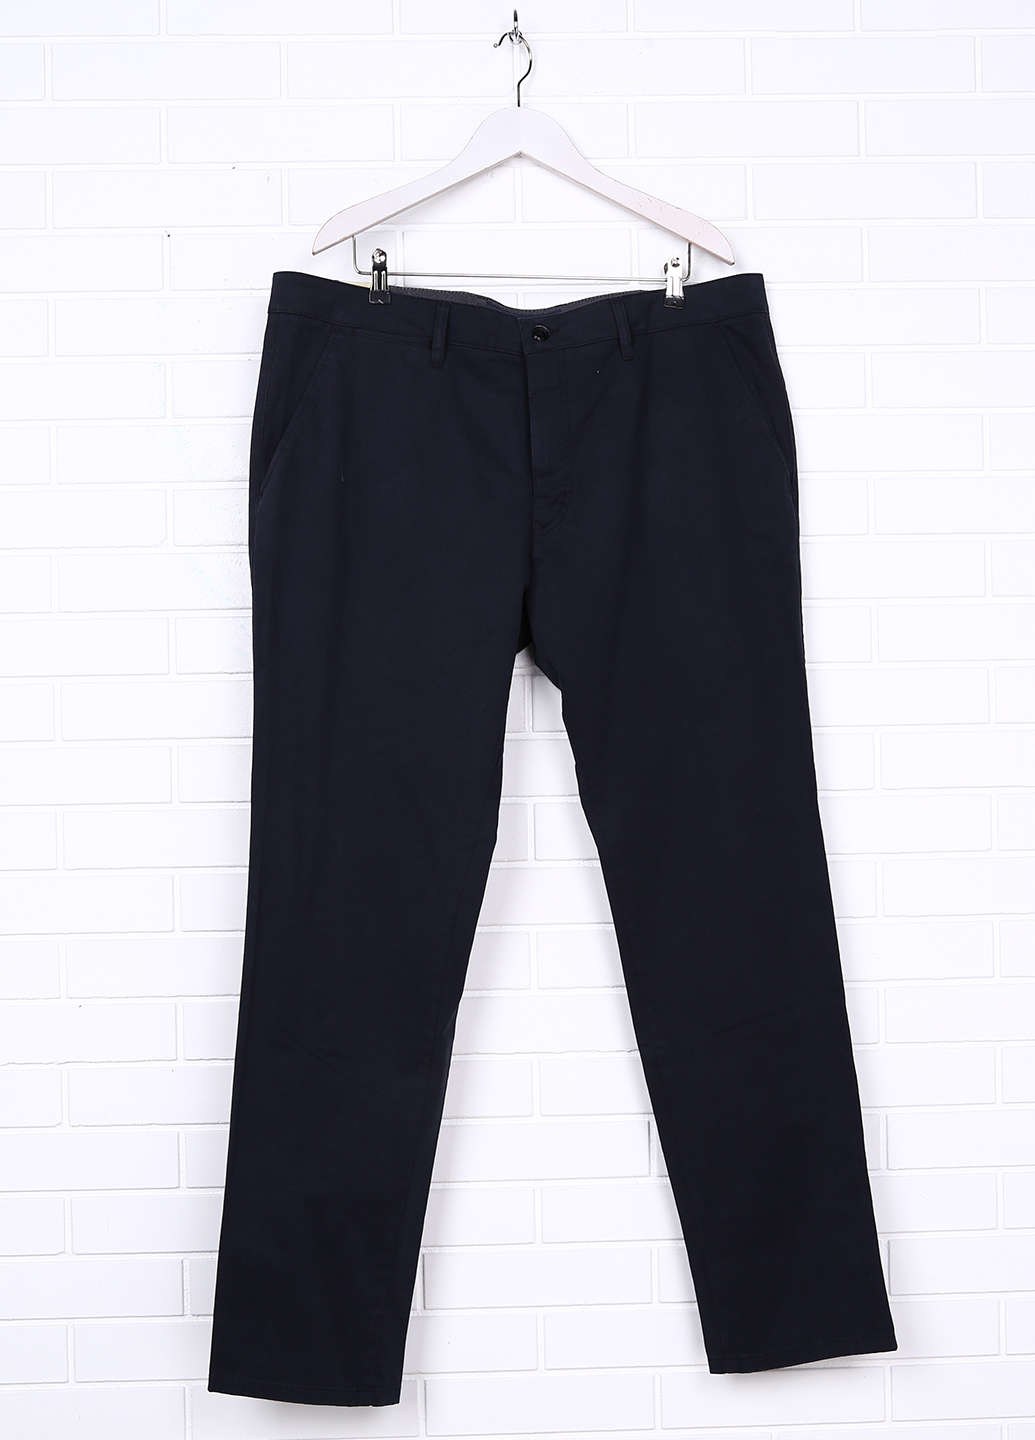 Мужские брюки-поло Pioneer 42/34 Черный (2900054910011)